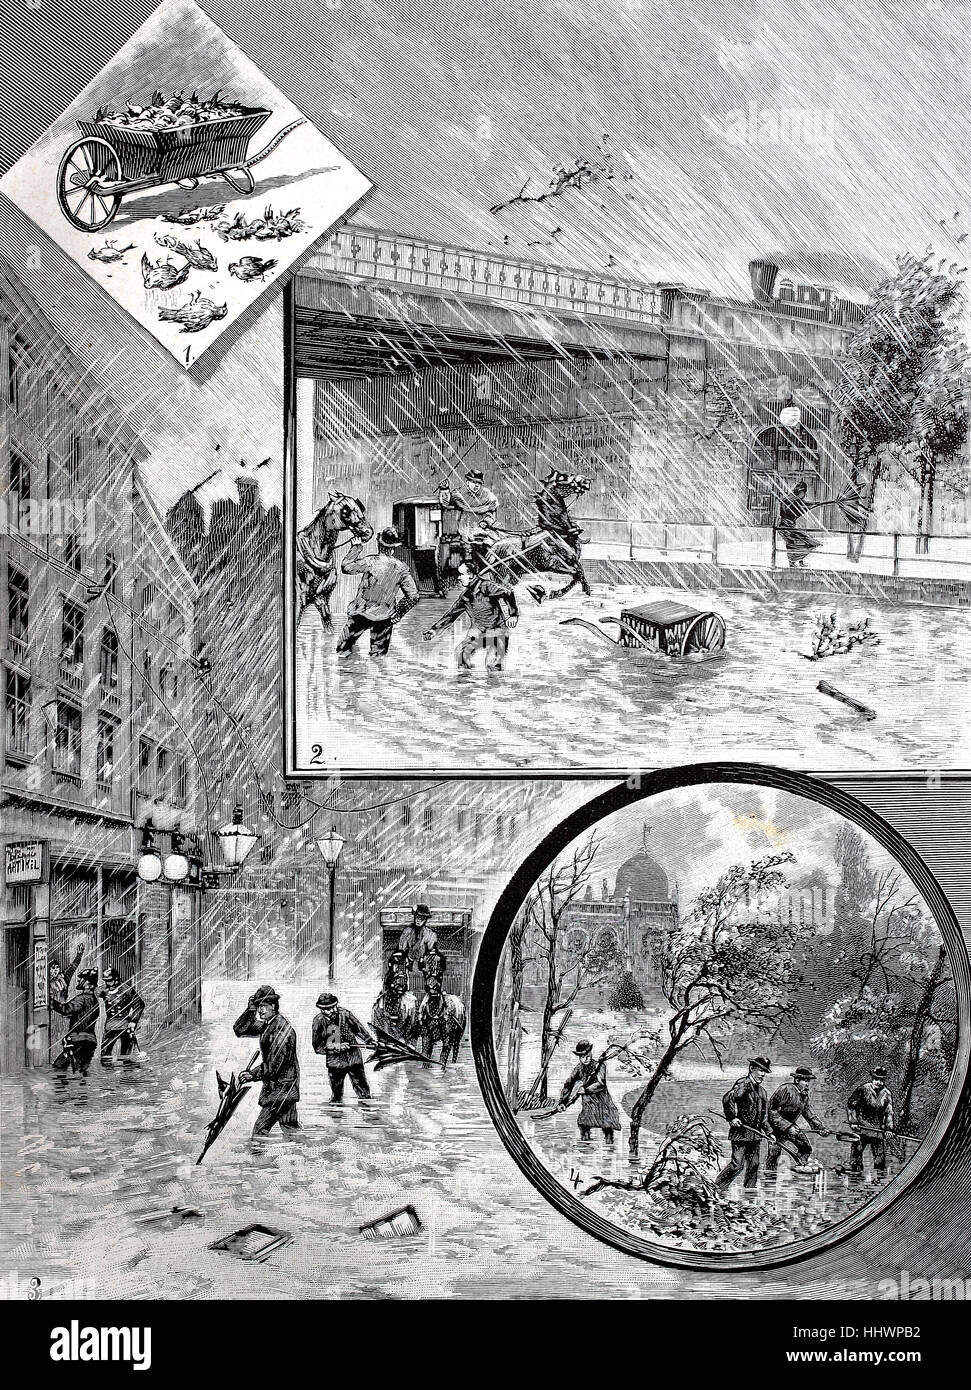 La catastrofe meteo, inondazioni, tempeste di Vienna, il disegno originale di M. Ledeli, Austria, immagine storica o illustrazione, pubblicato 1890, digitale migliorata Foto Stock